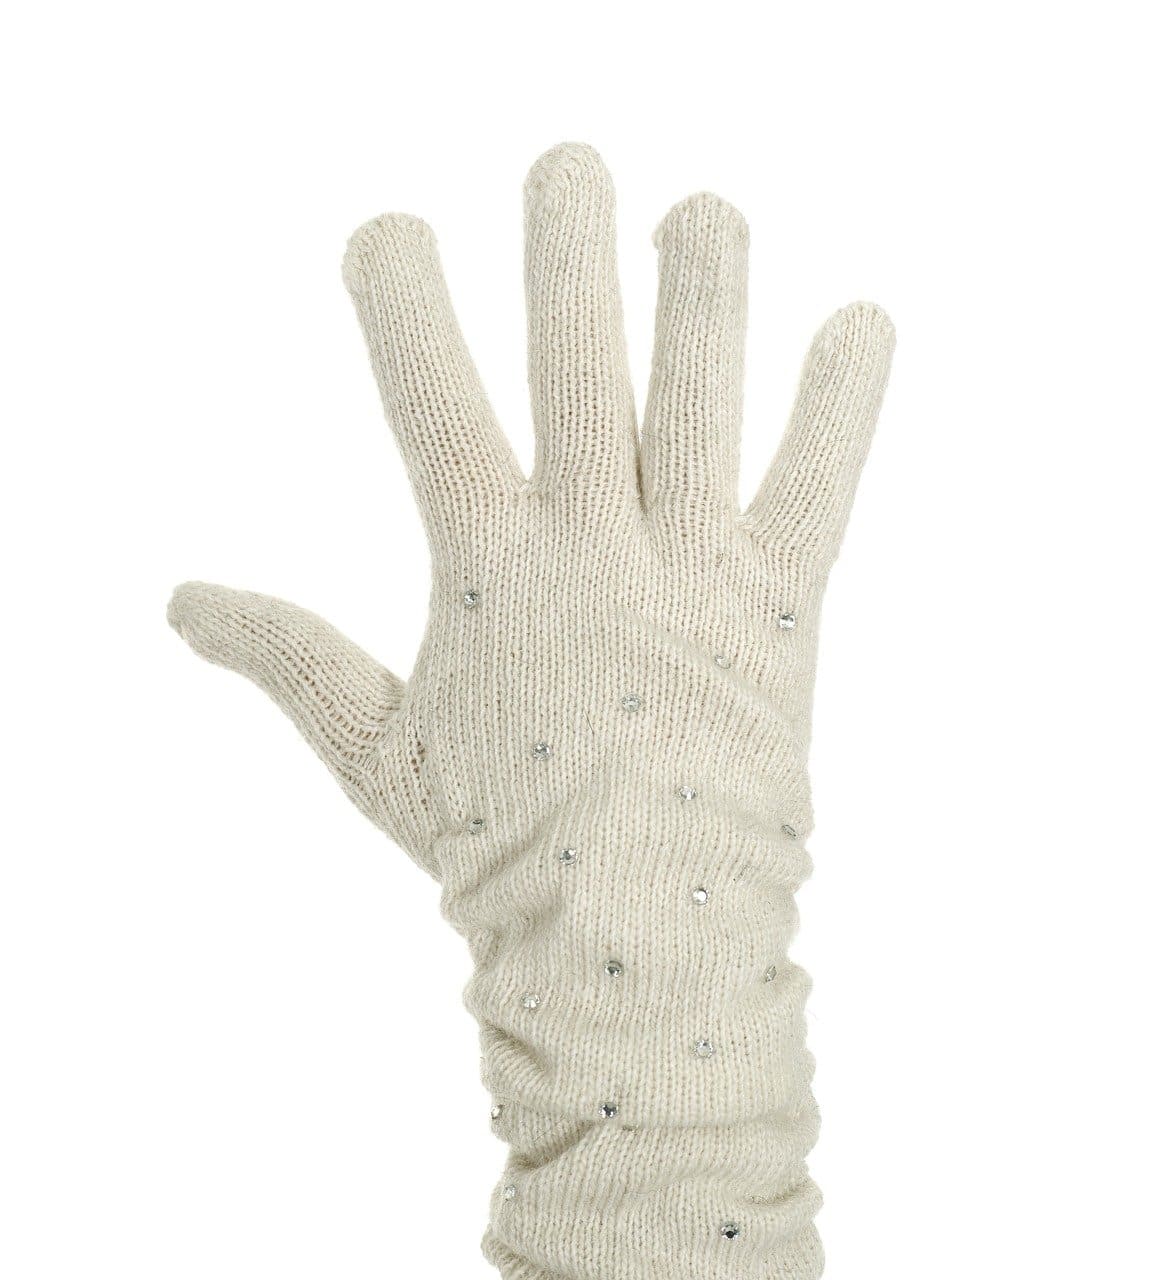 mitten-gloves-manufacturers